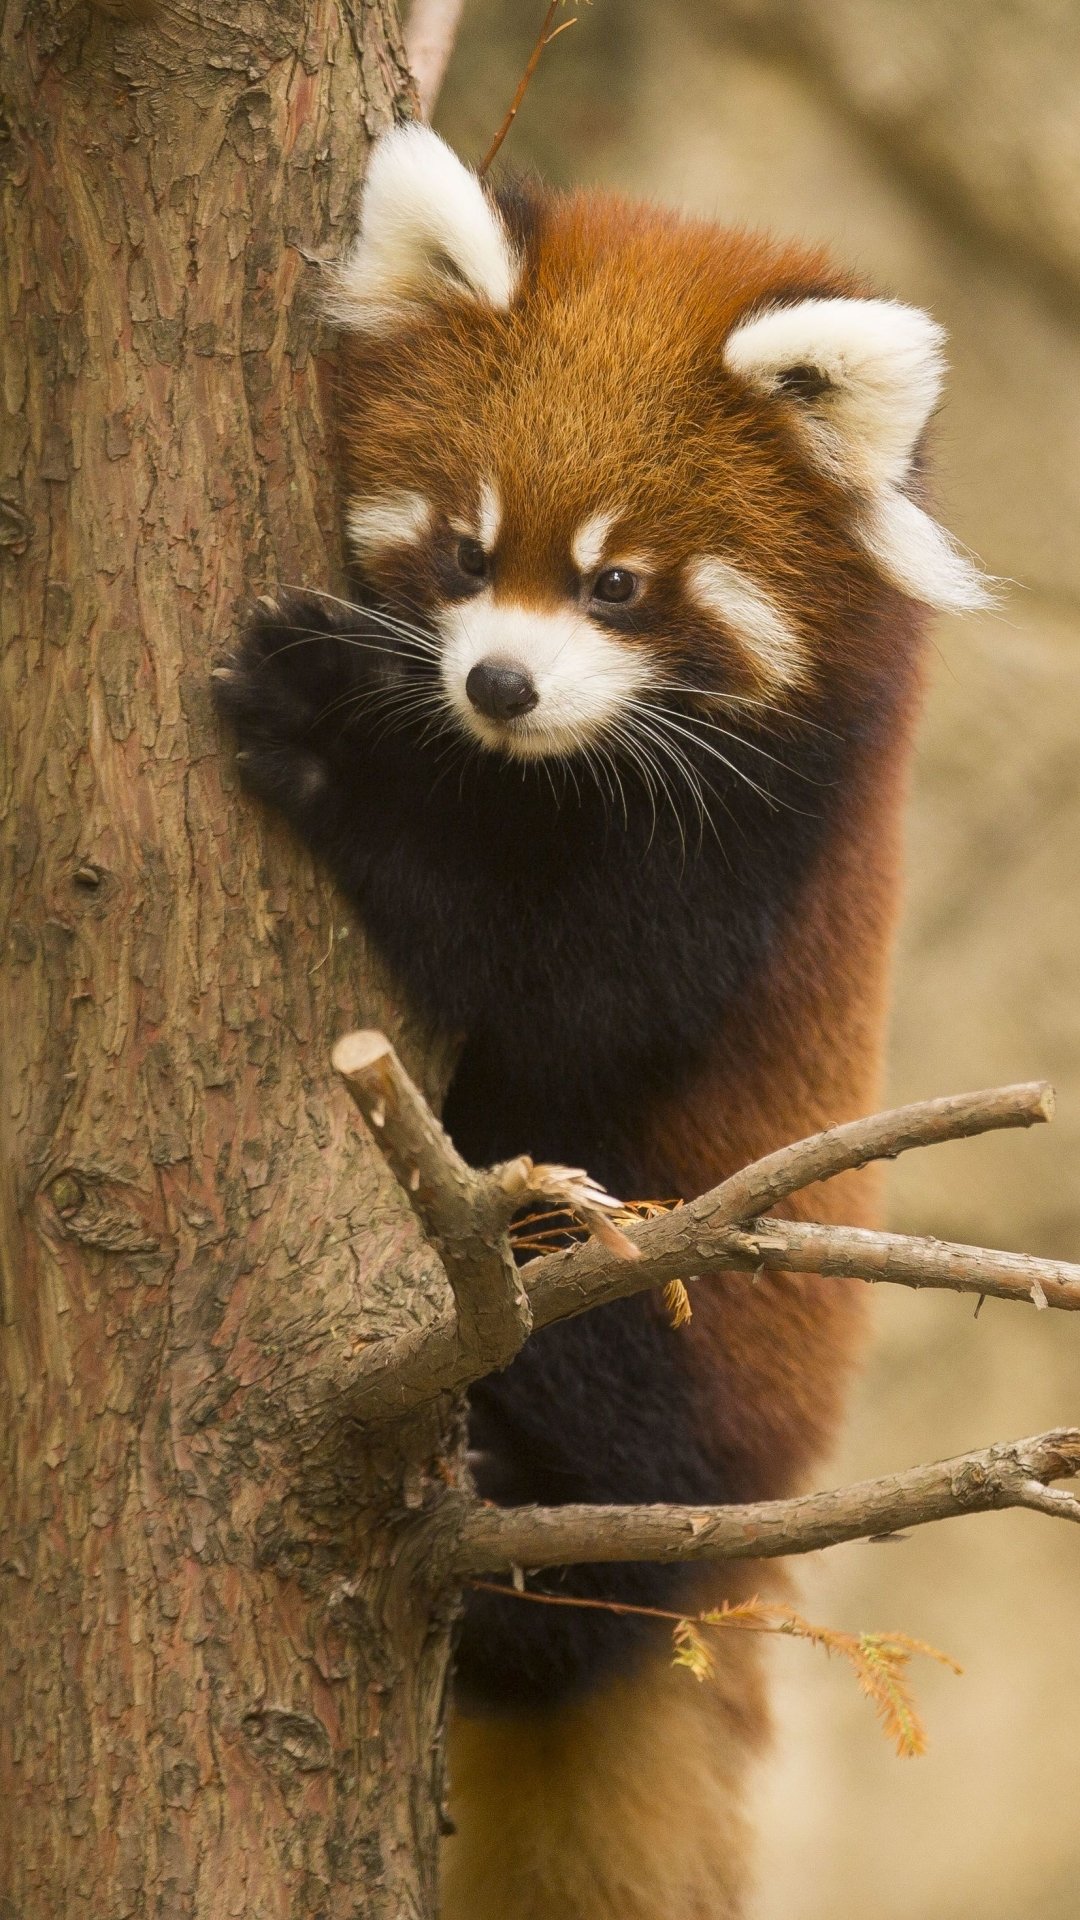 Red Panda Cute Iphone Wallpapers